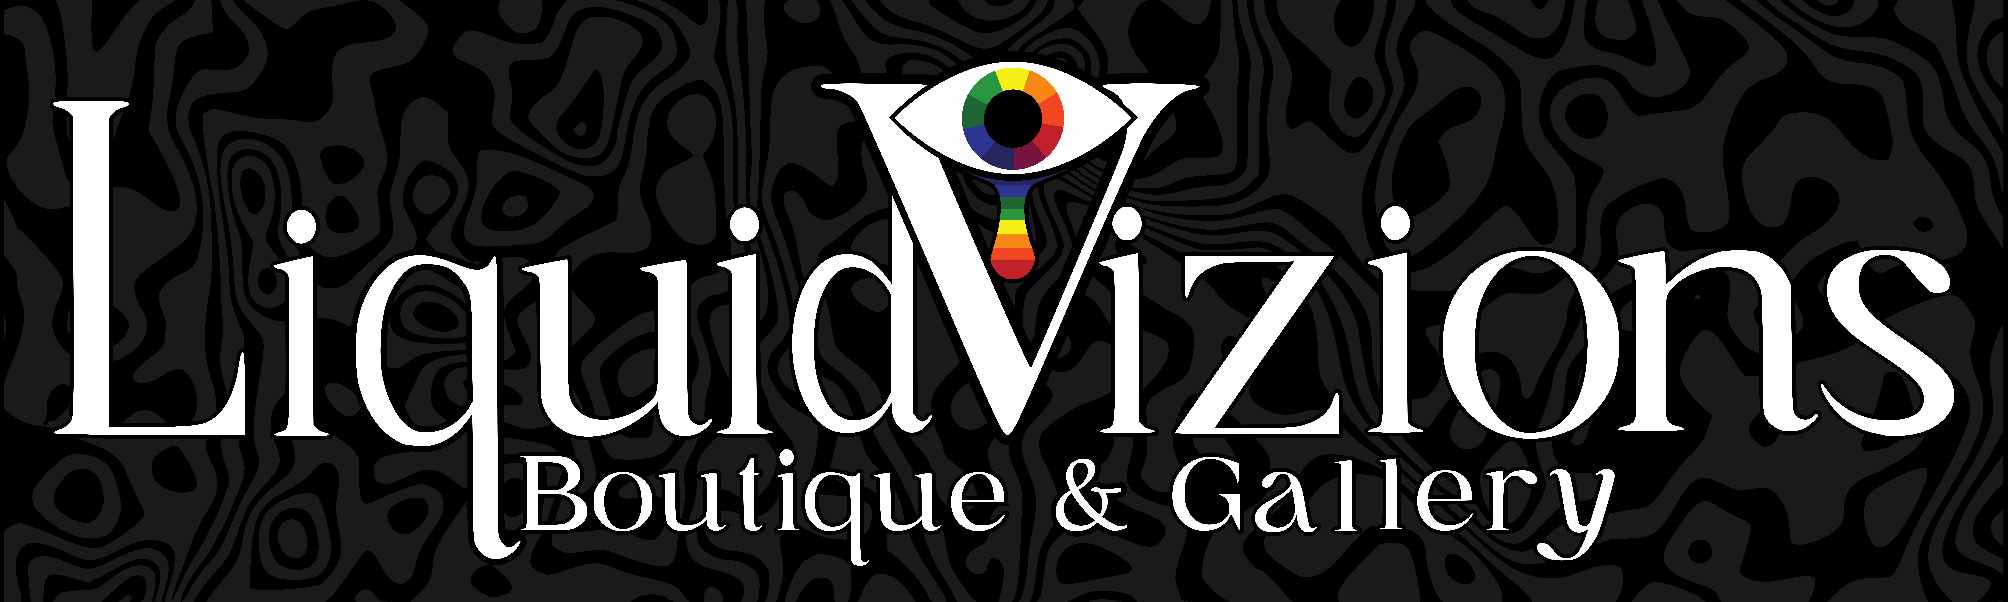 Liquid Vizions: Boutique & Gallery